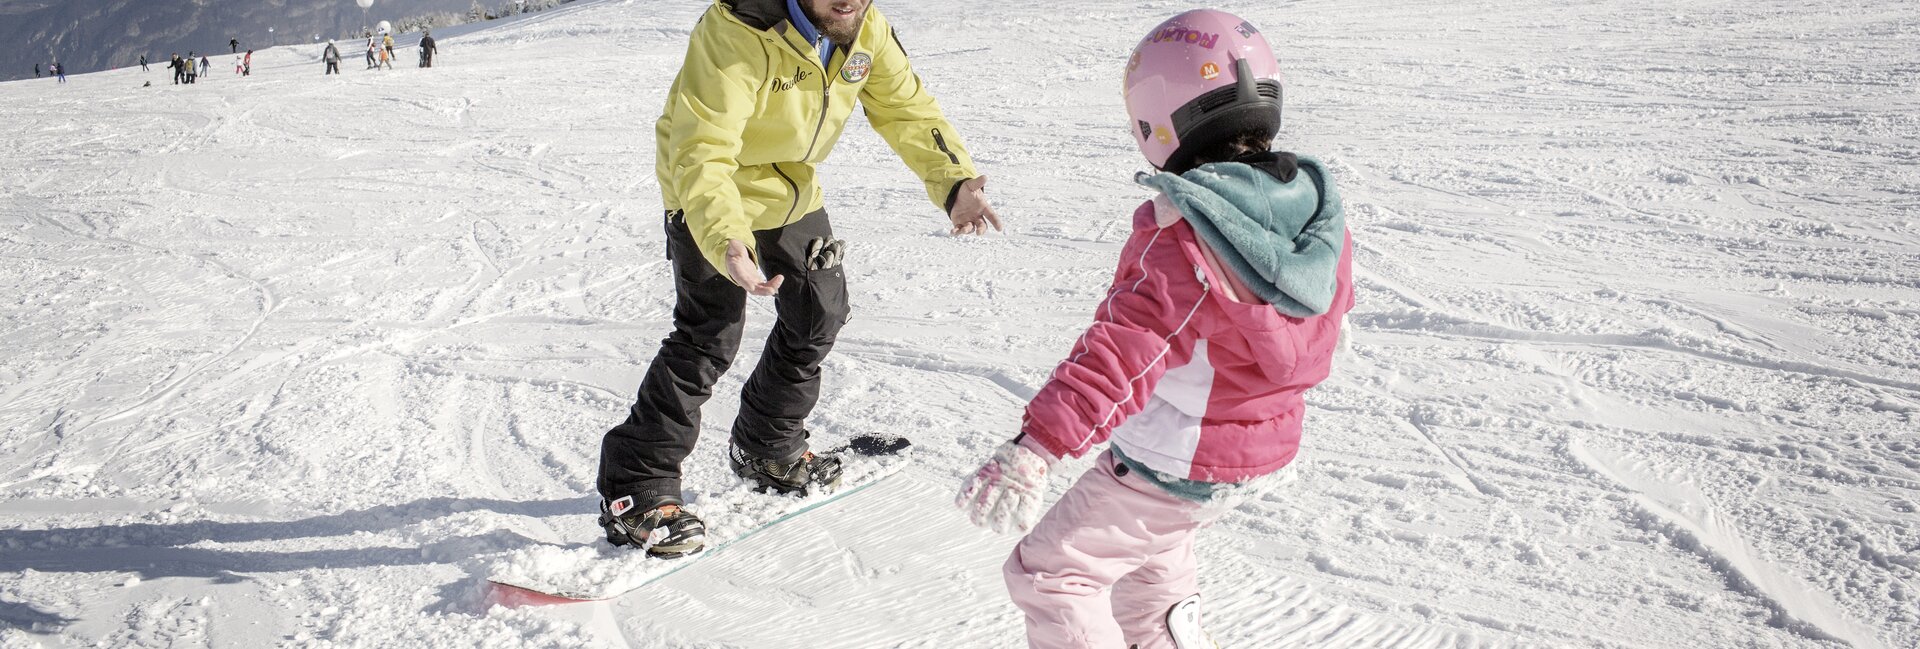 Monte Bondone - Idealną dla miłośników nart klasycznych, biegowych i snowboardu